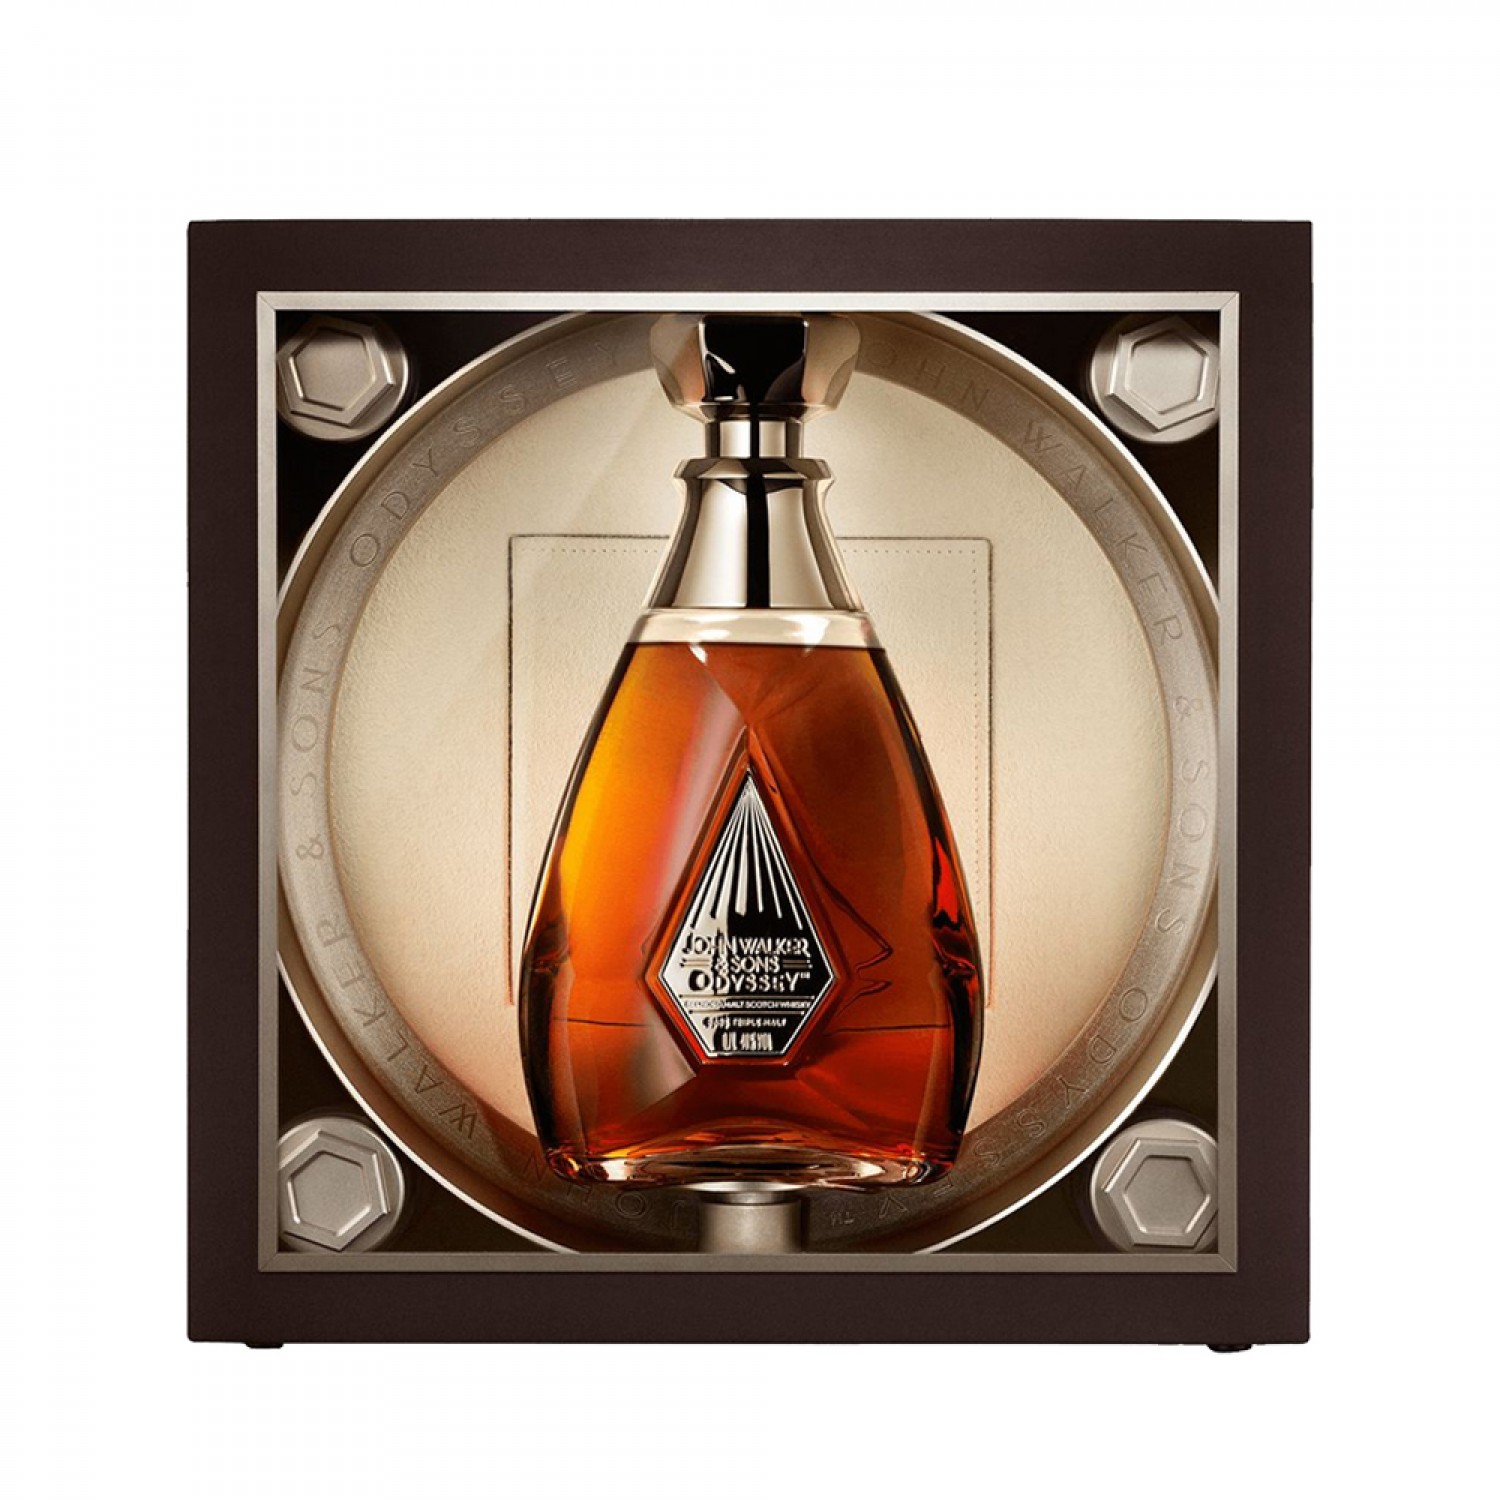 John & Sons Odyssey Scotch Whisky 700ml